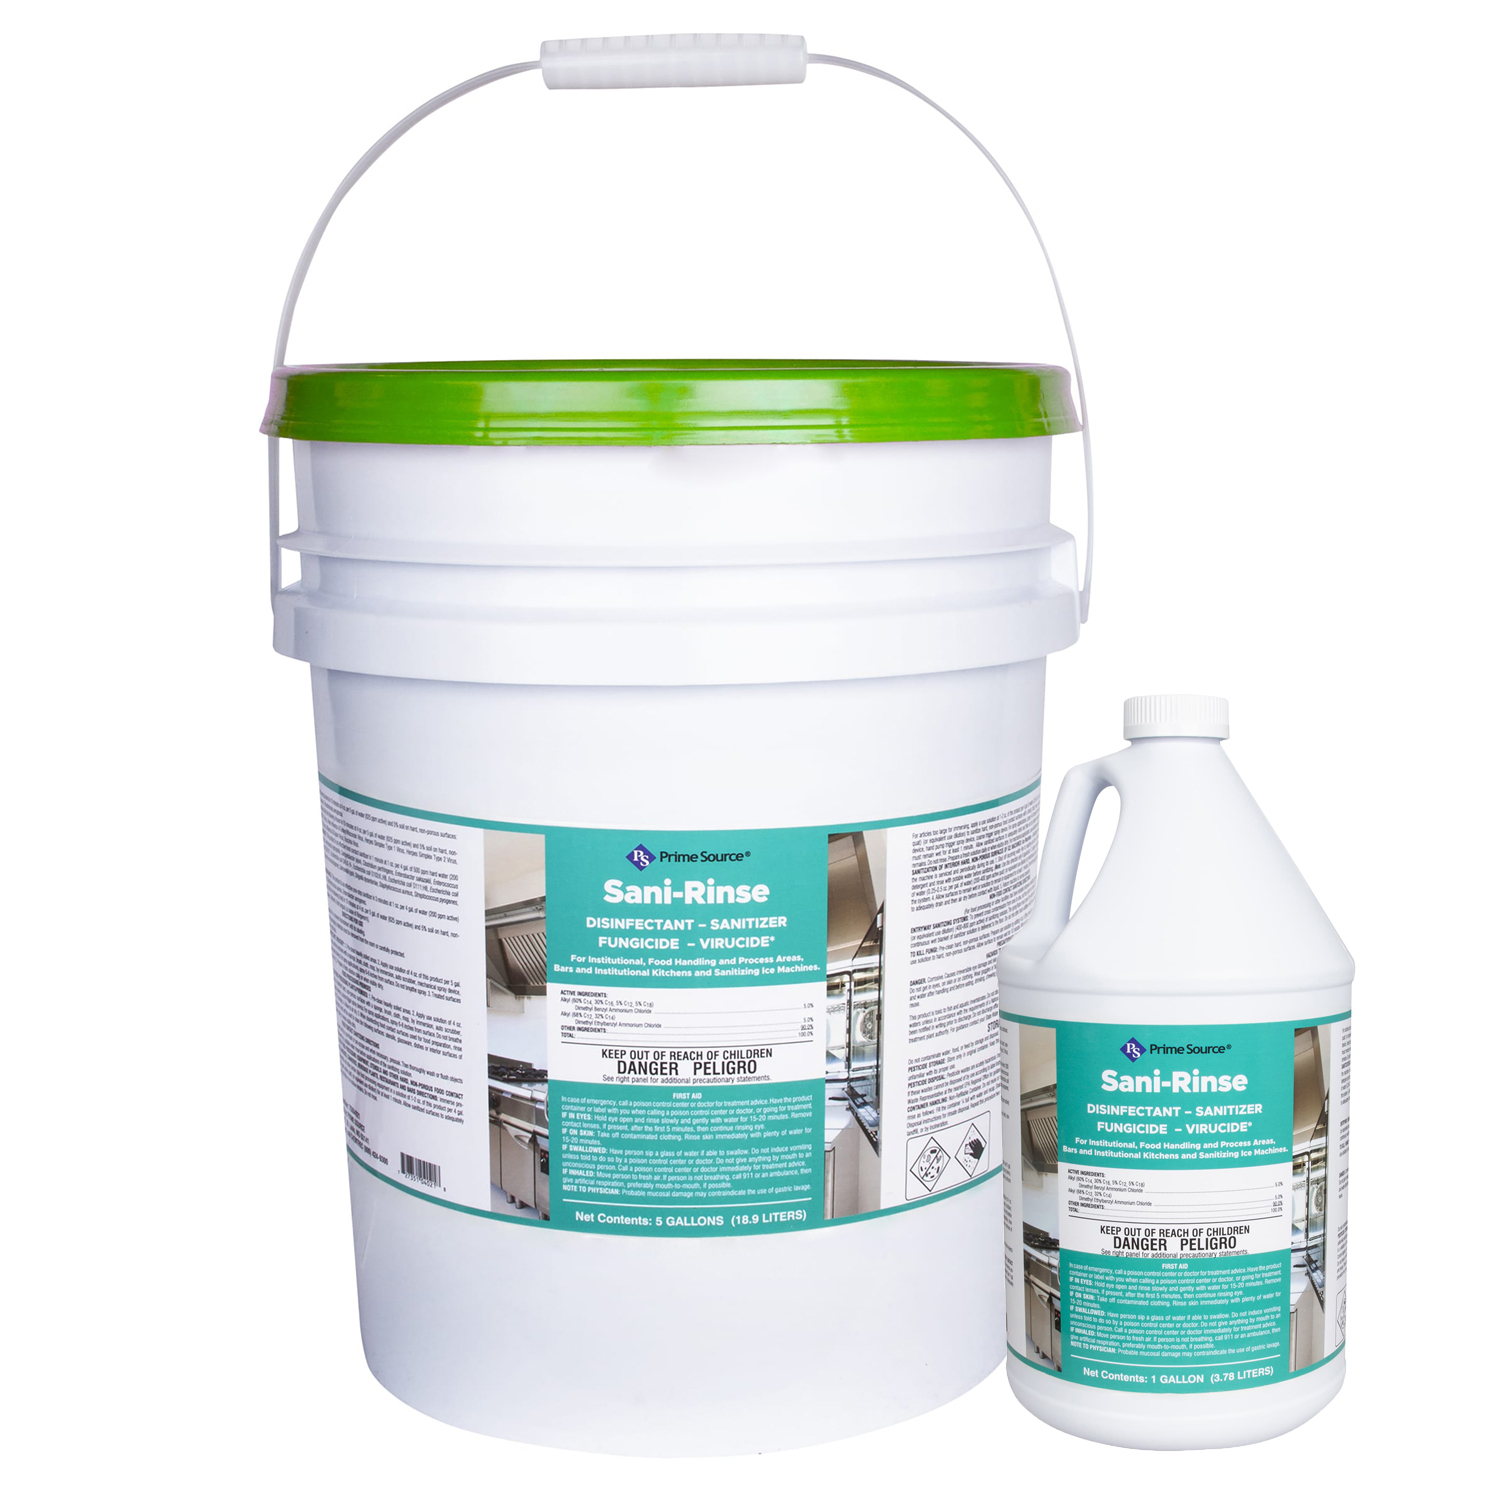 Prime Source® Sani-Rinse Sanitizer, 1 gal